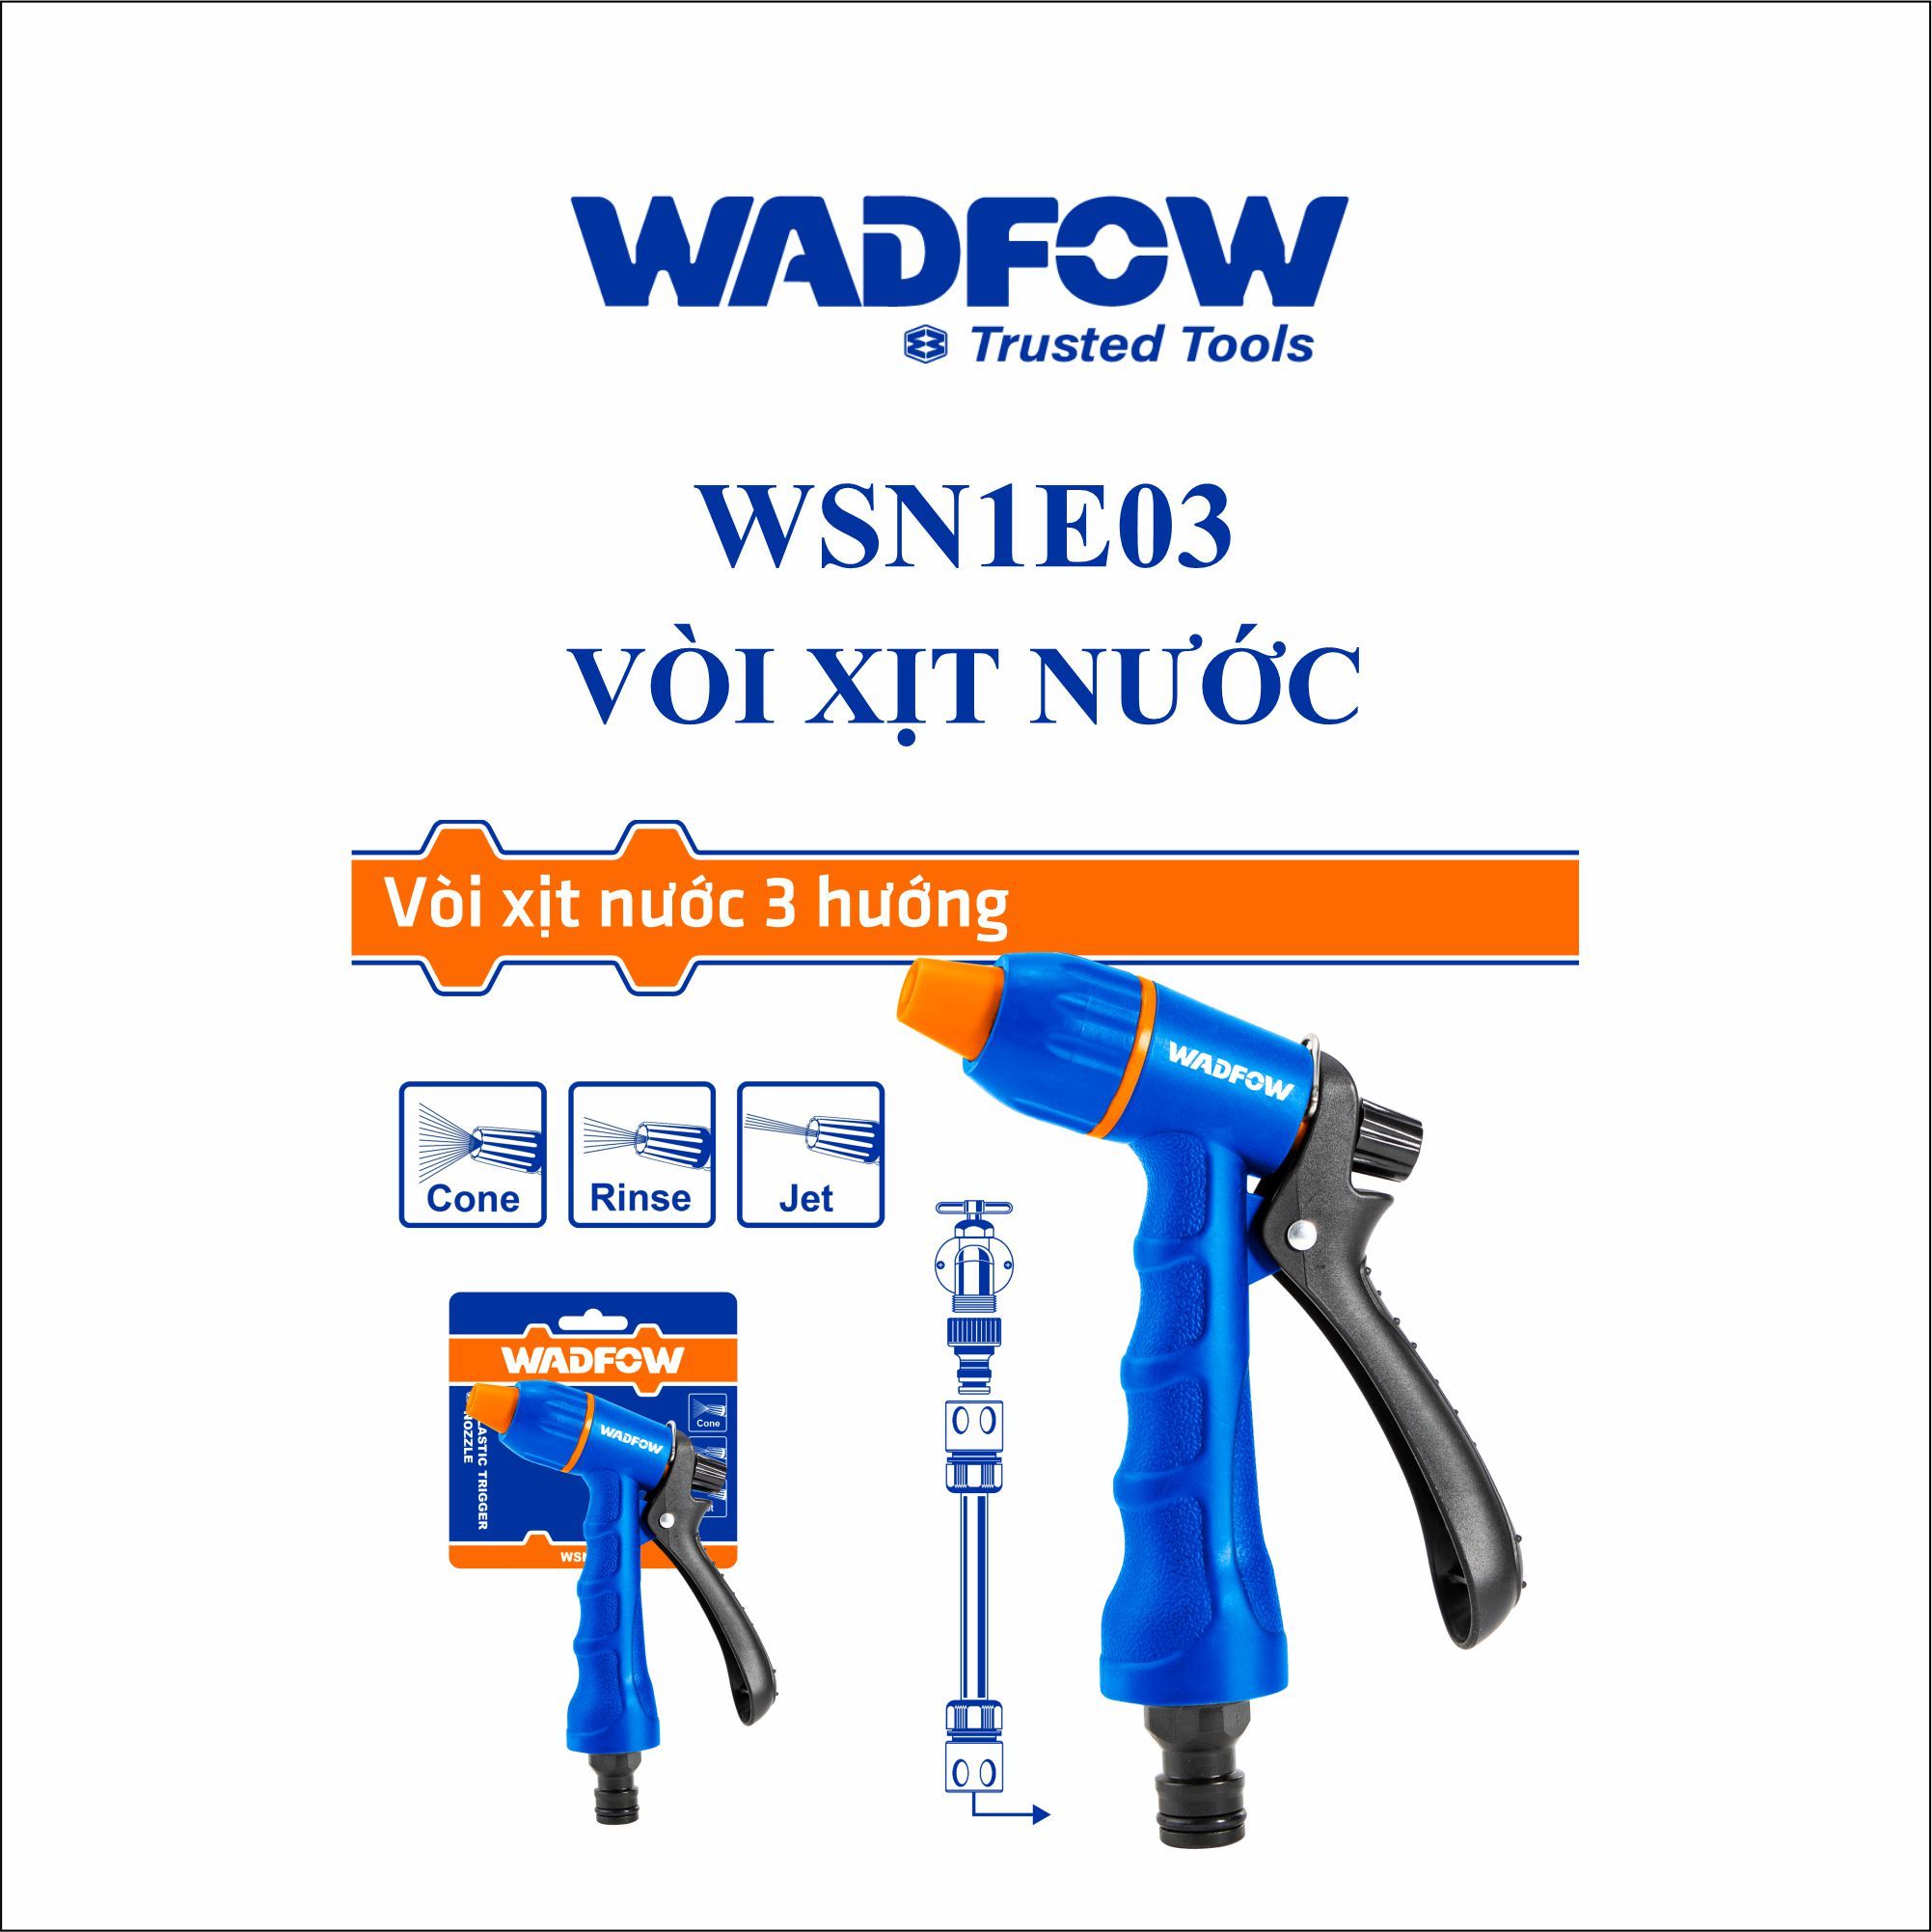  Vòi xịt nước WADFOW WSN1E03 